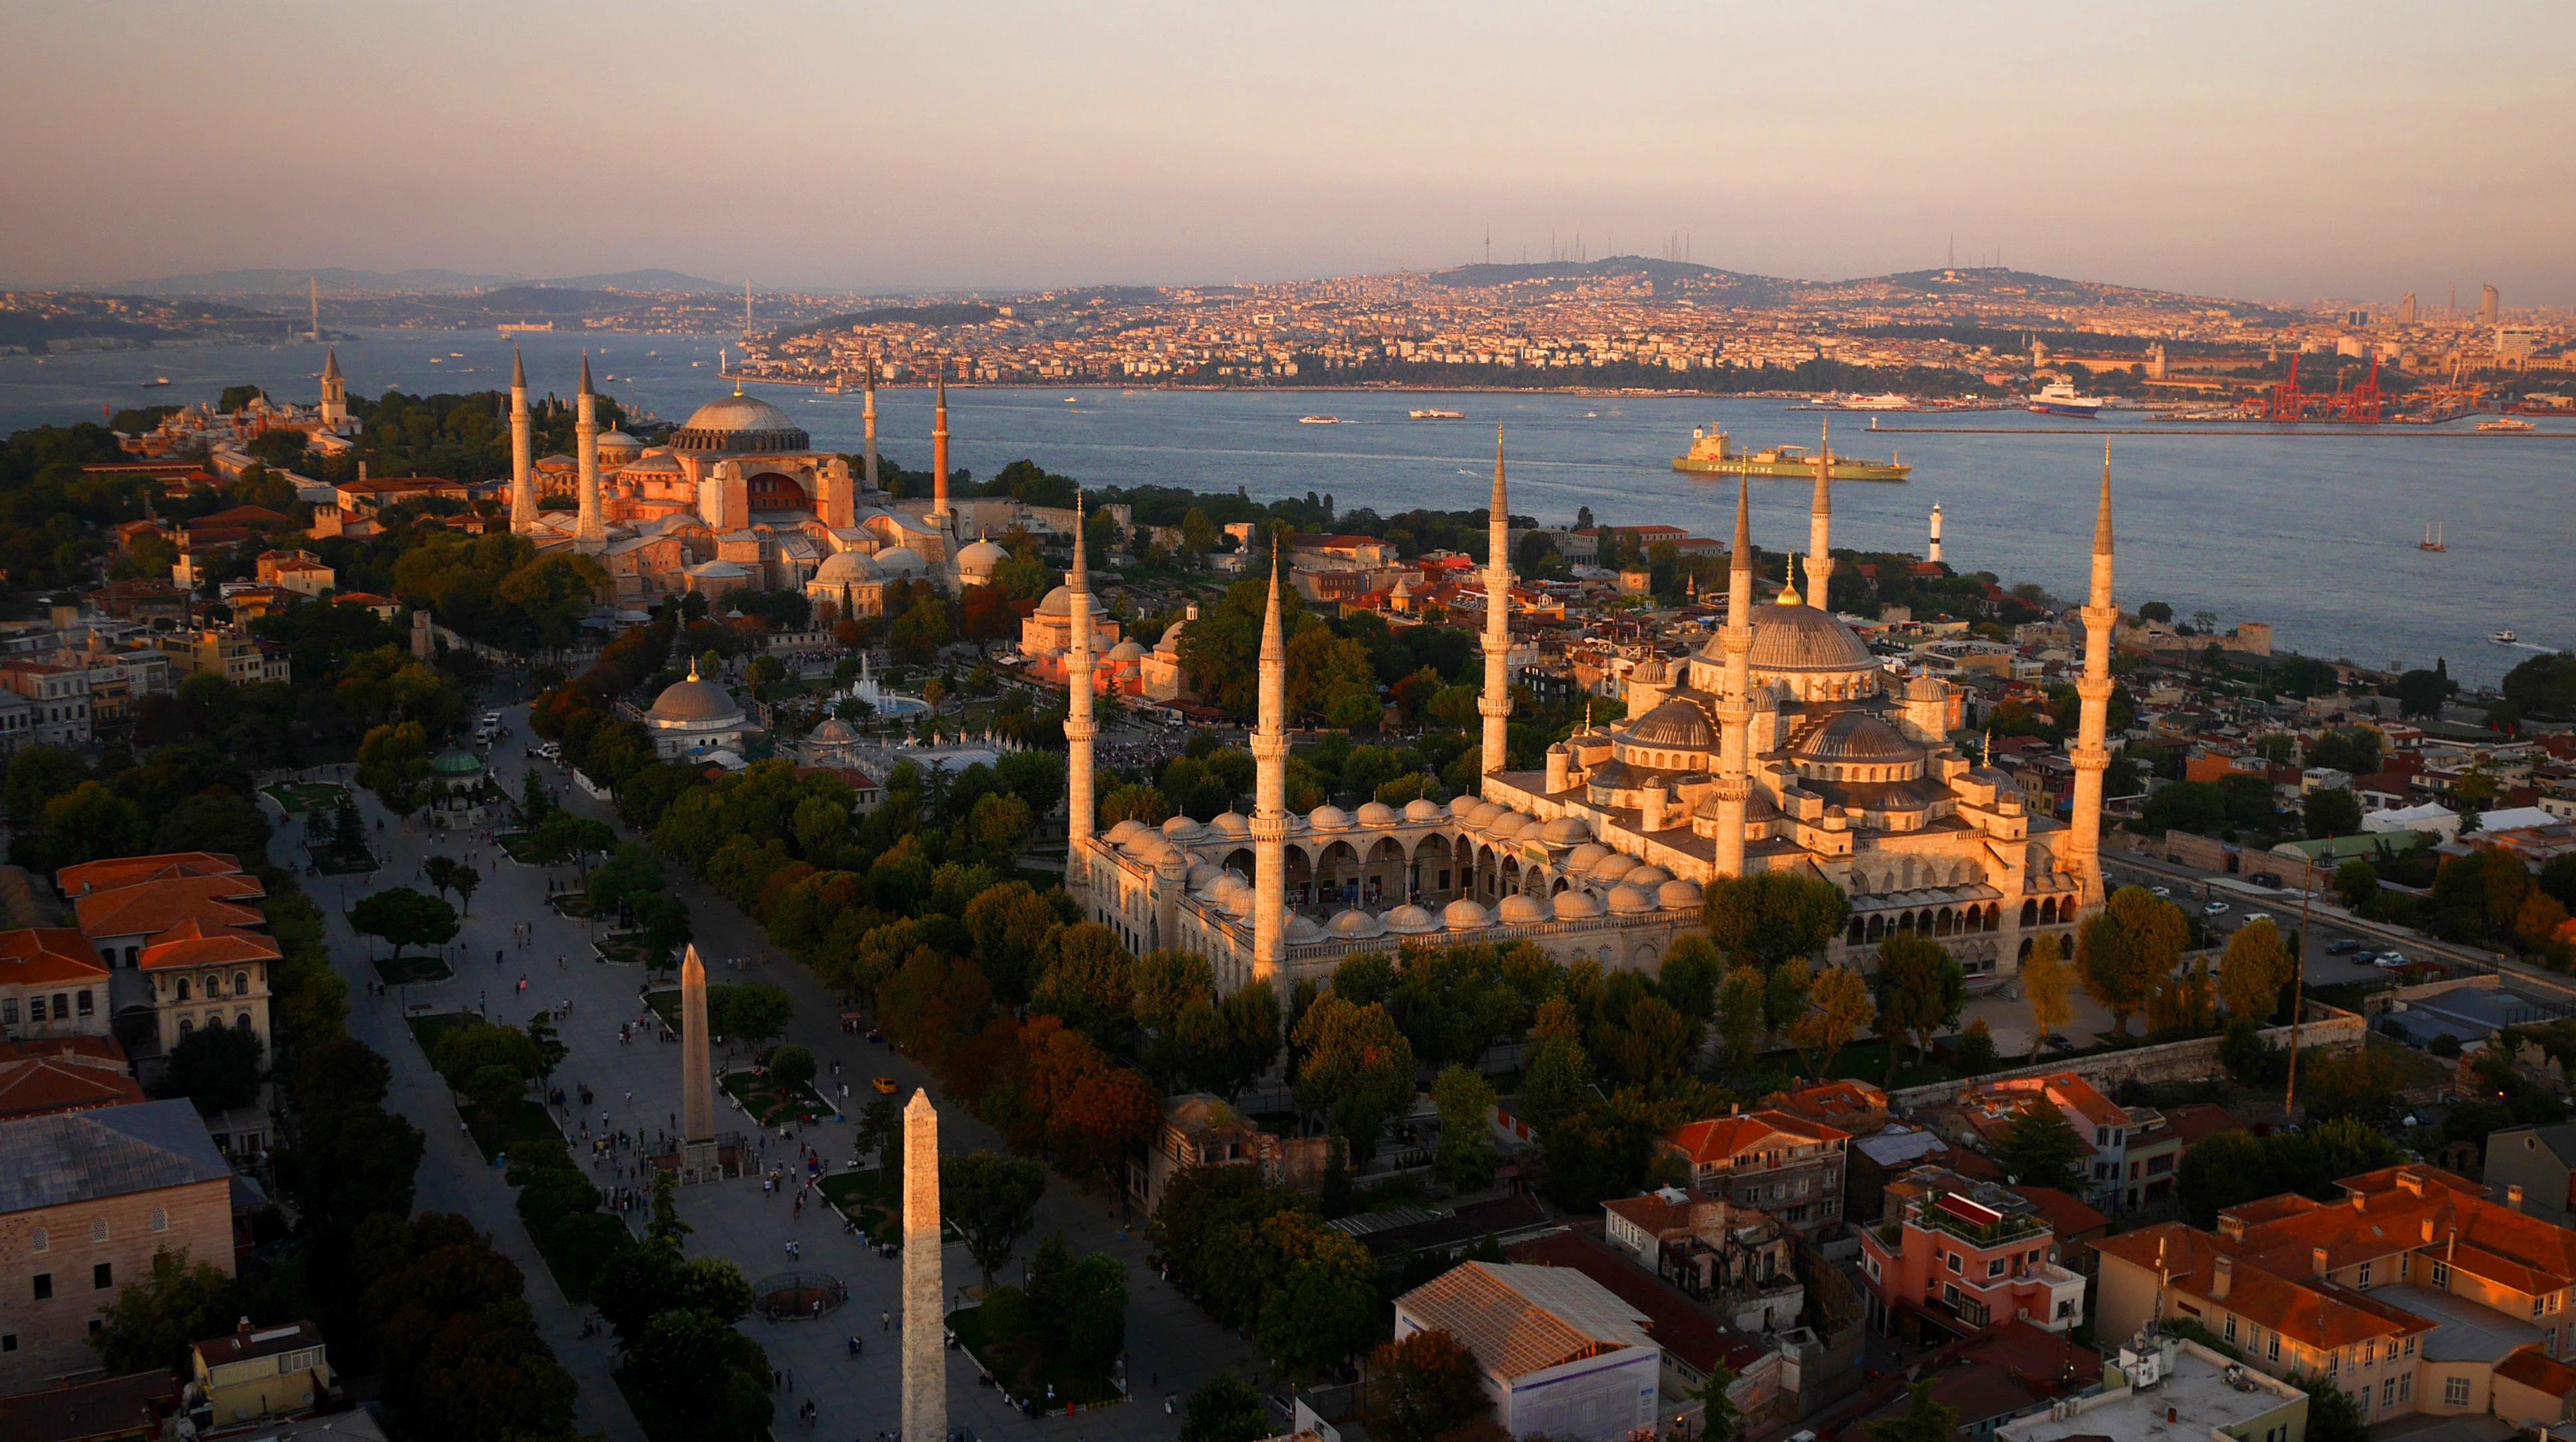 General 3872x2167 city cityscape Istanbul Hagia Sophia mosque Sultan Ahmed Mosque Turkey Ottoman architecture Ottoman Empire